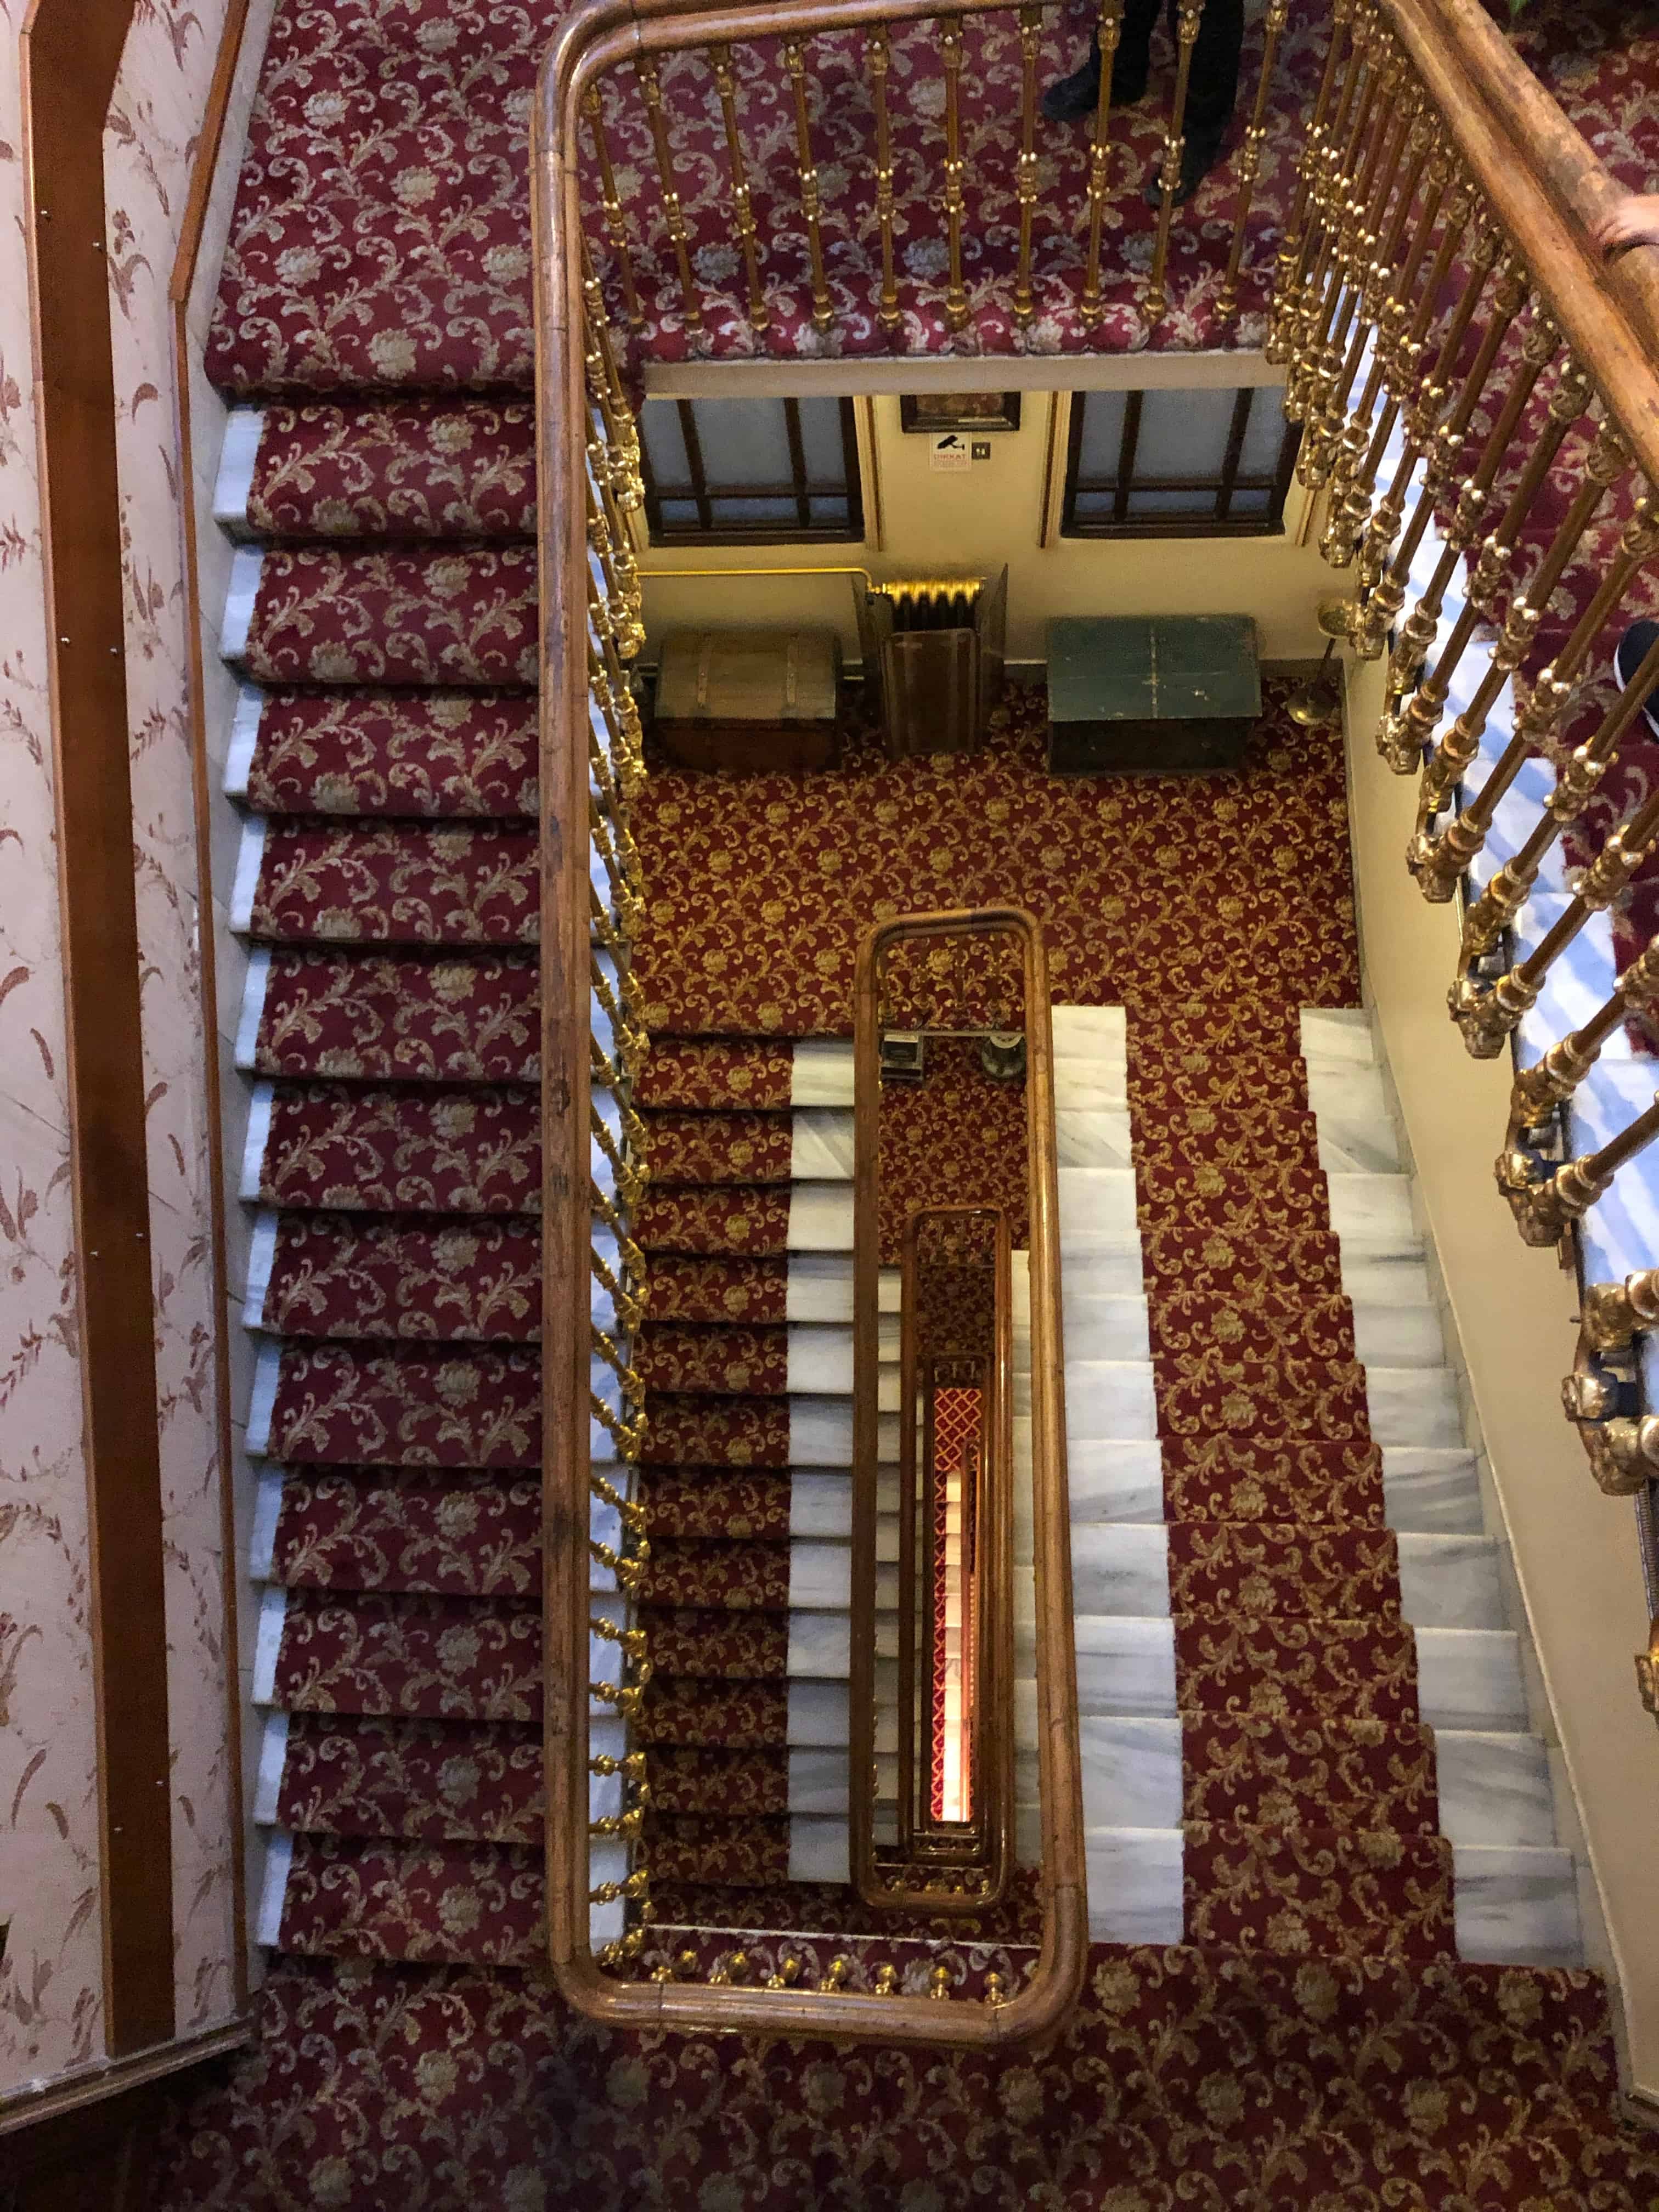 Stairwell in the Grand Hotel de Londres in Tepebaşı, Istanbul, Turkey